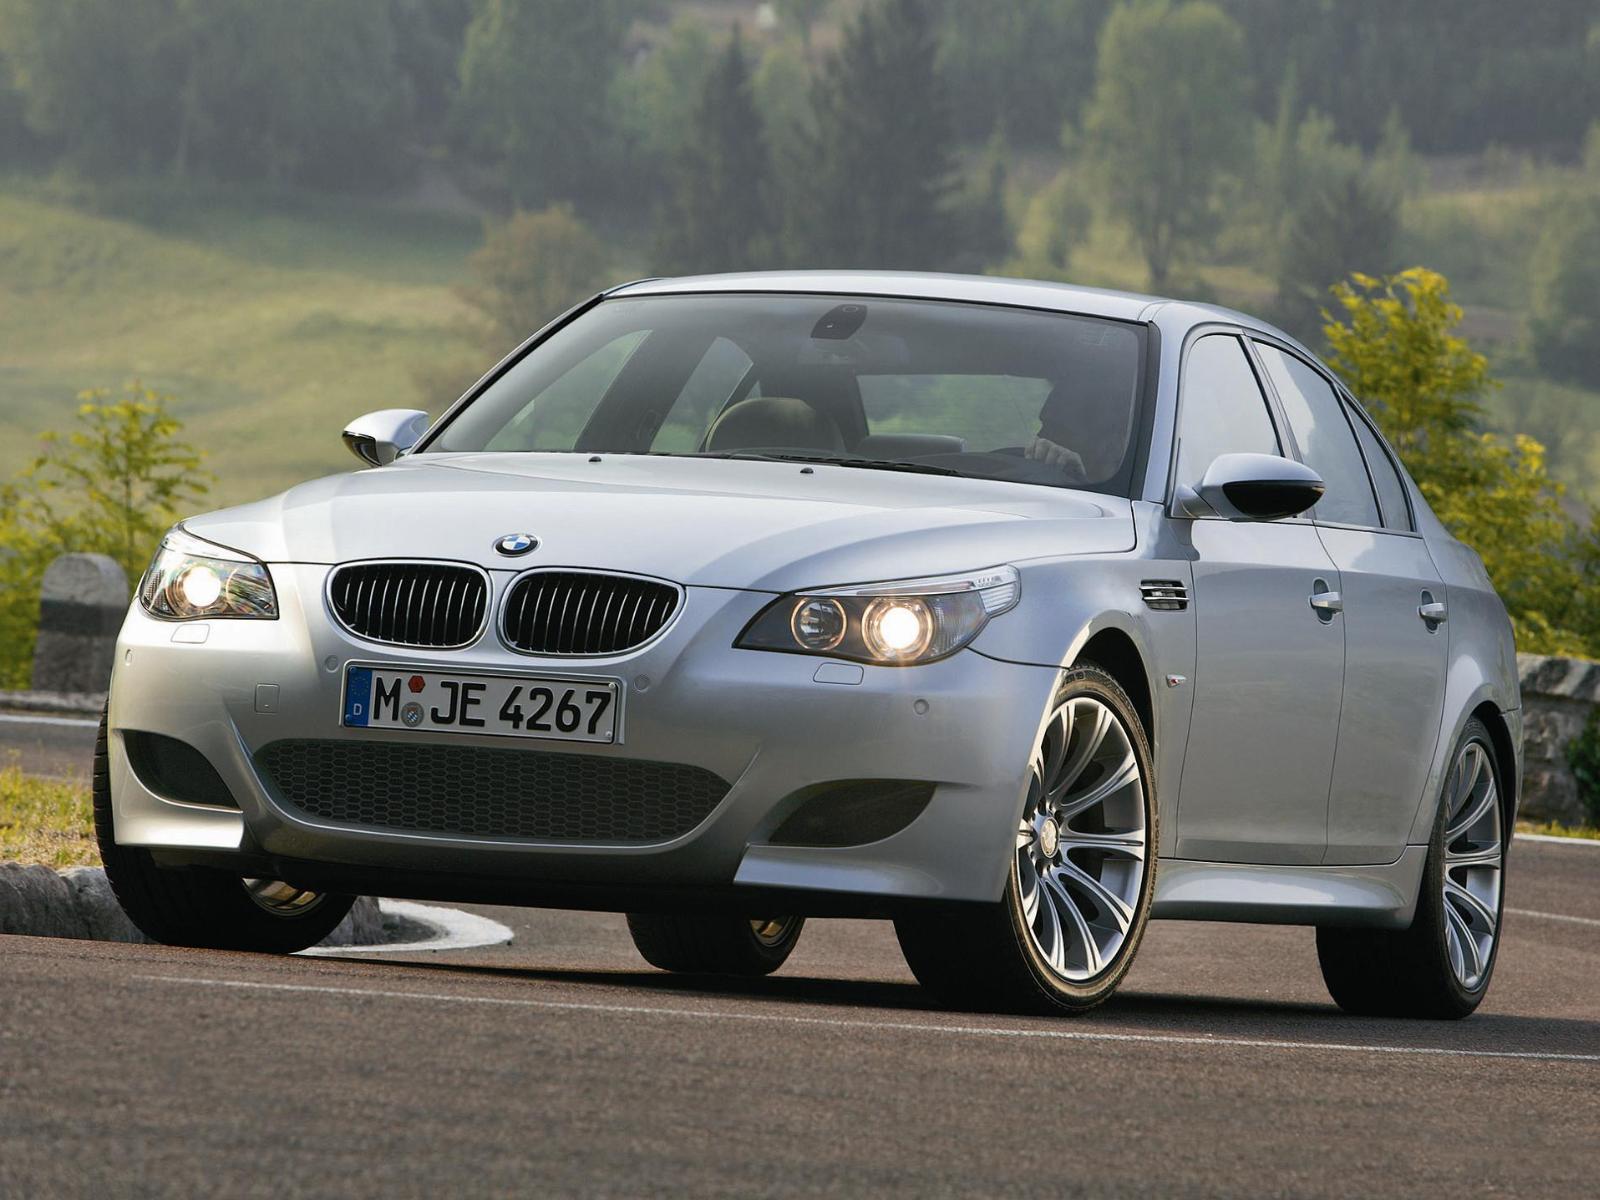 М5 машина купить. BMW 5 e60. BMW m5 60 e60. BMW m5 e60 2004. БМВ м5 е60.